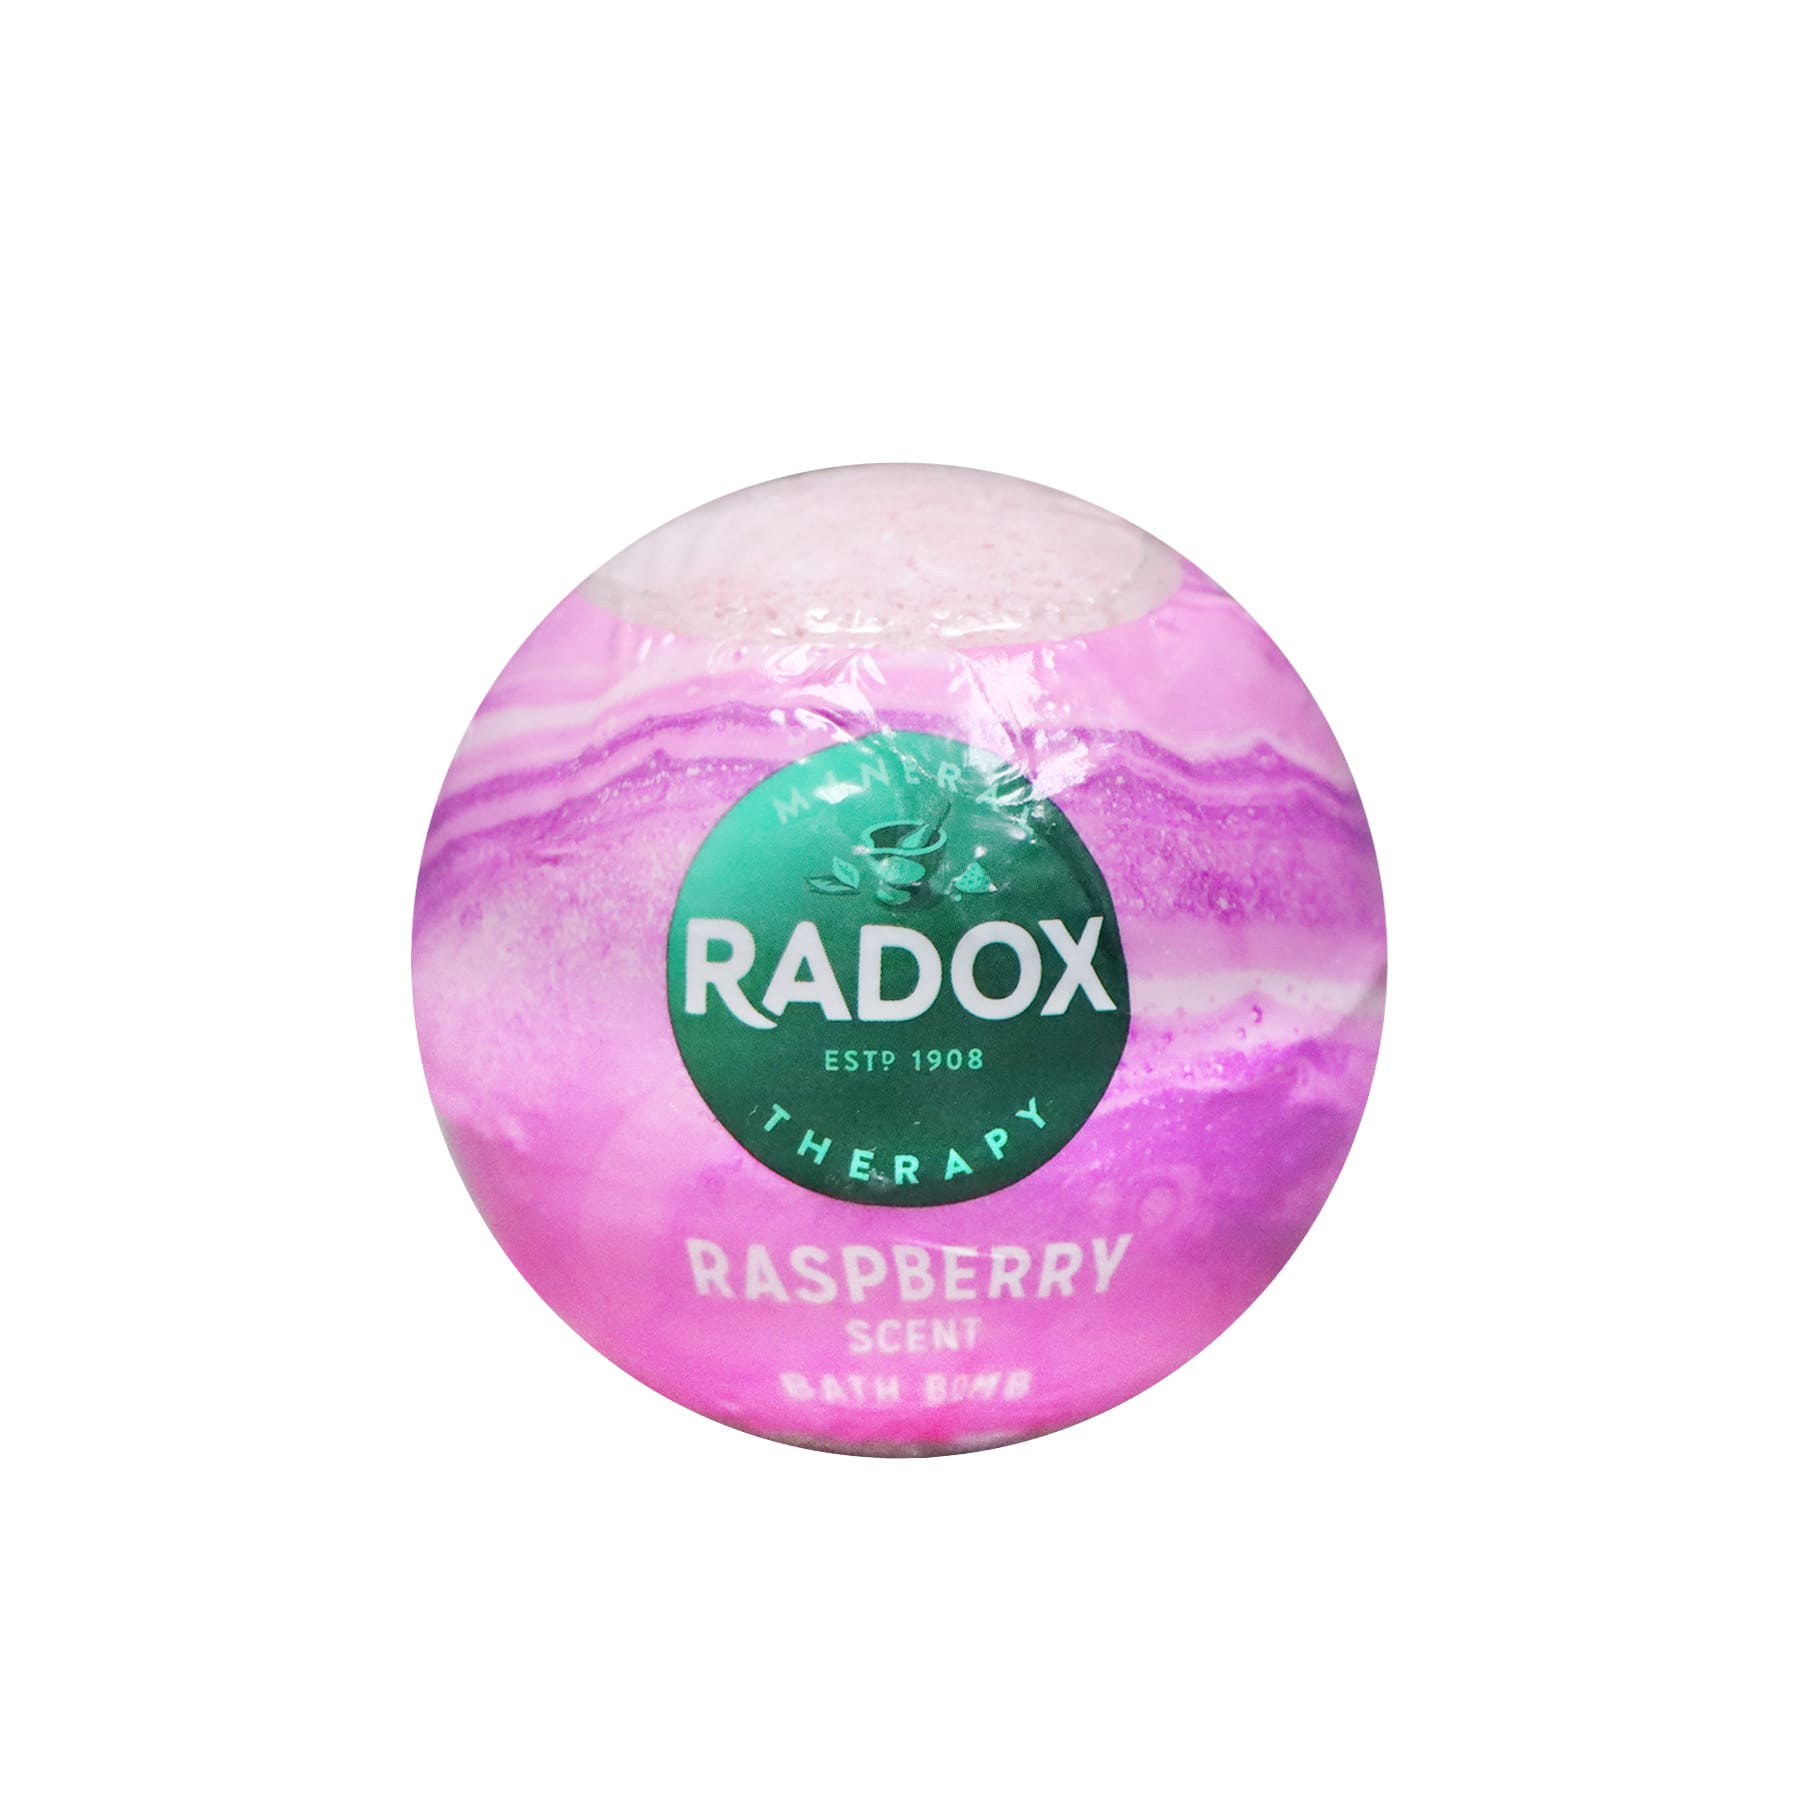 Radox 礦物成分浸浴汽泡彈 100g (紅桑子味)